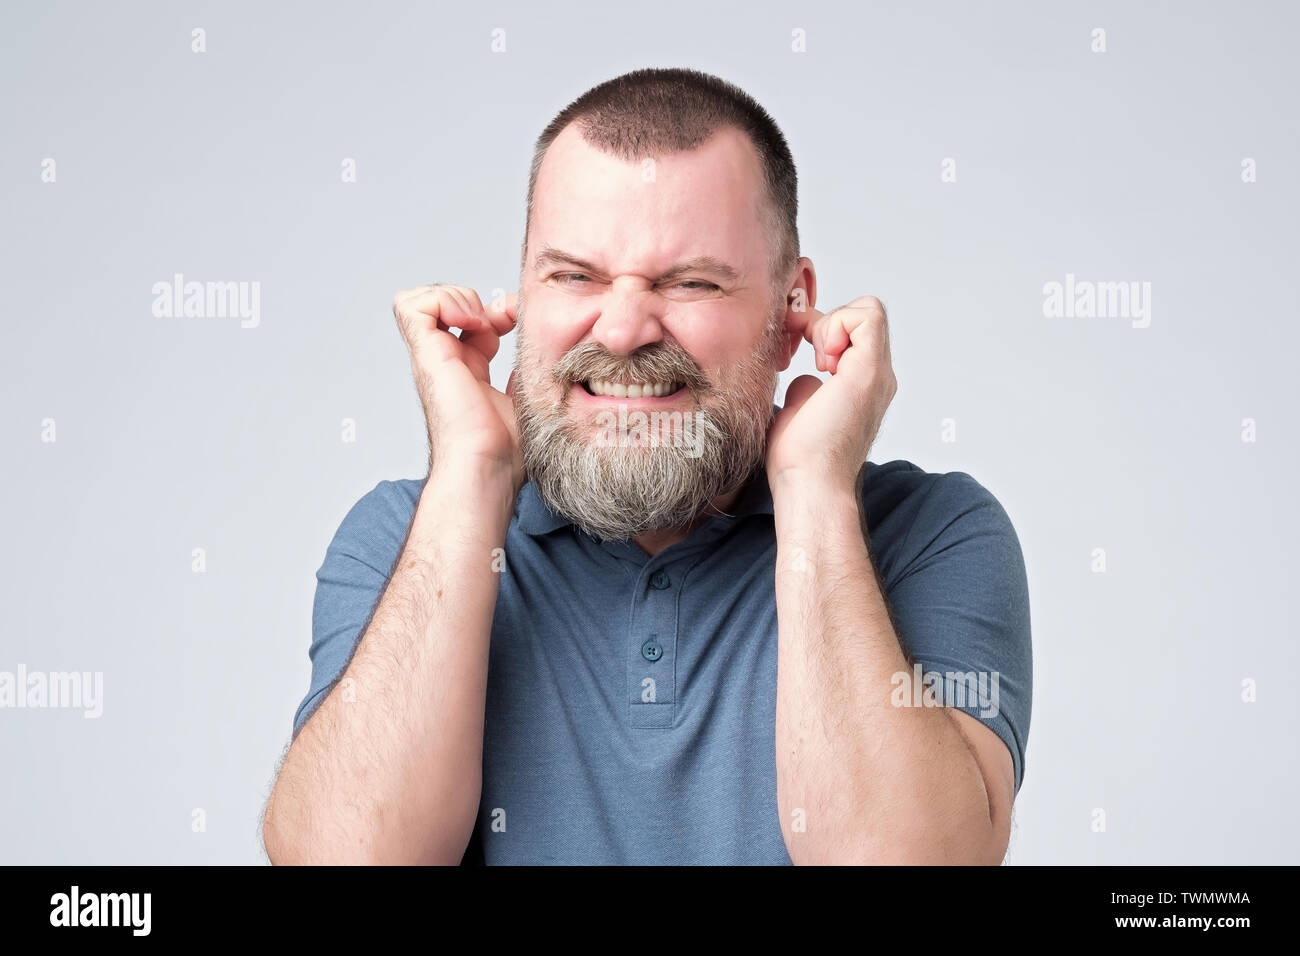 Annoyed caucasian man avoid hear bothering loud noise Stock Photo